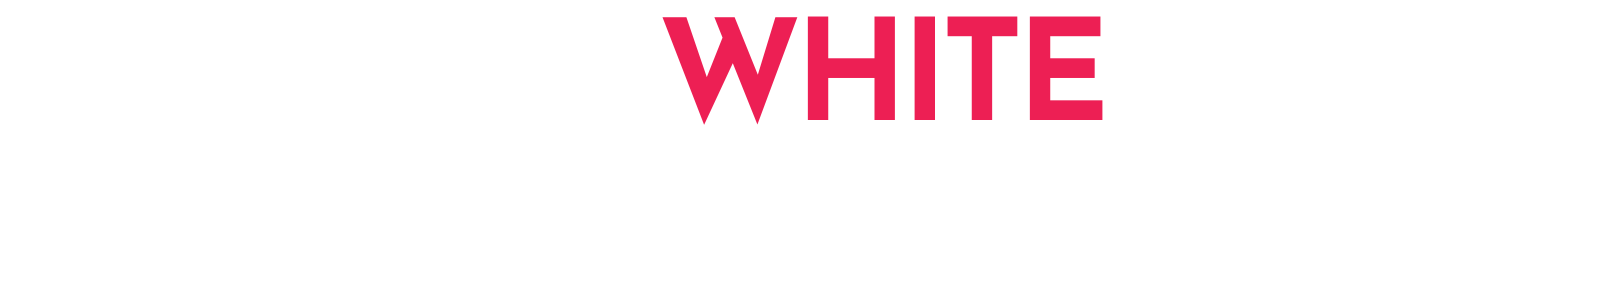 The White Rabbit Podcast